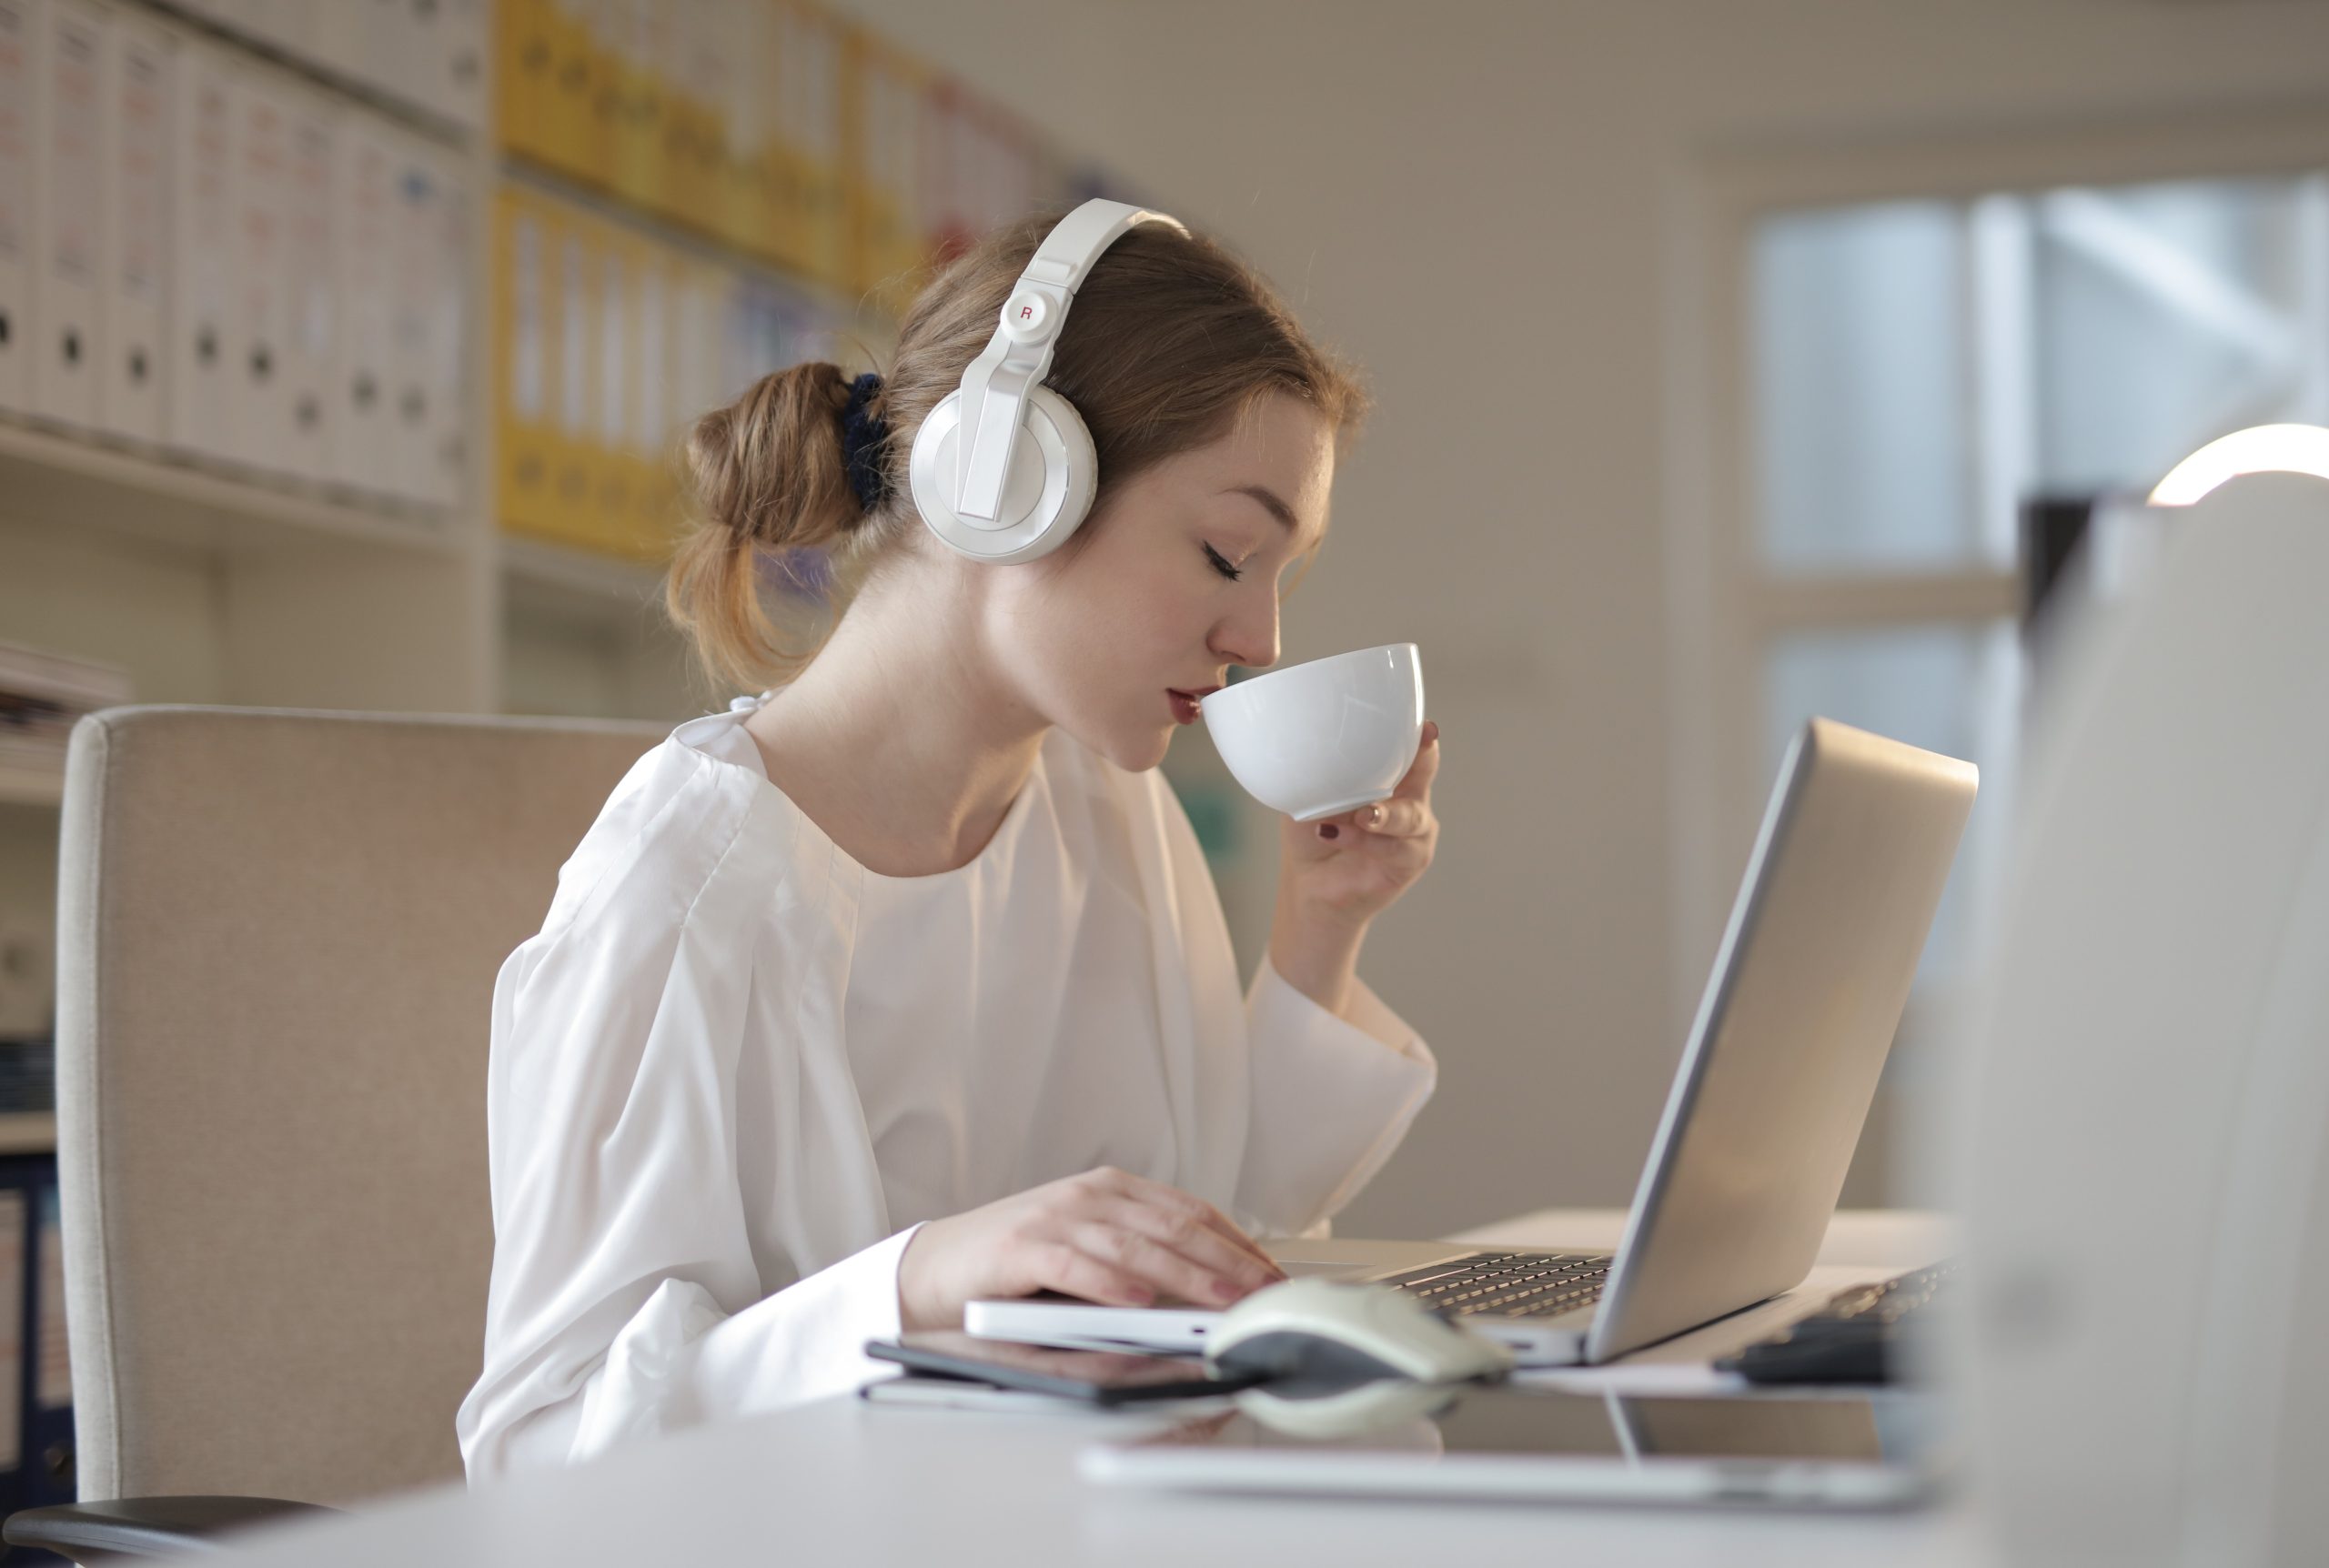 Photographie d'Andrea Piacquadio montrant une jeune femme avec des écouteurs qui boit du café : signe de bien-être au travail.